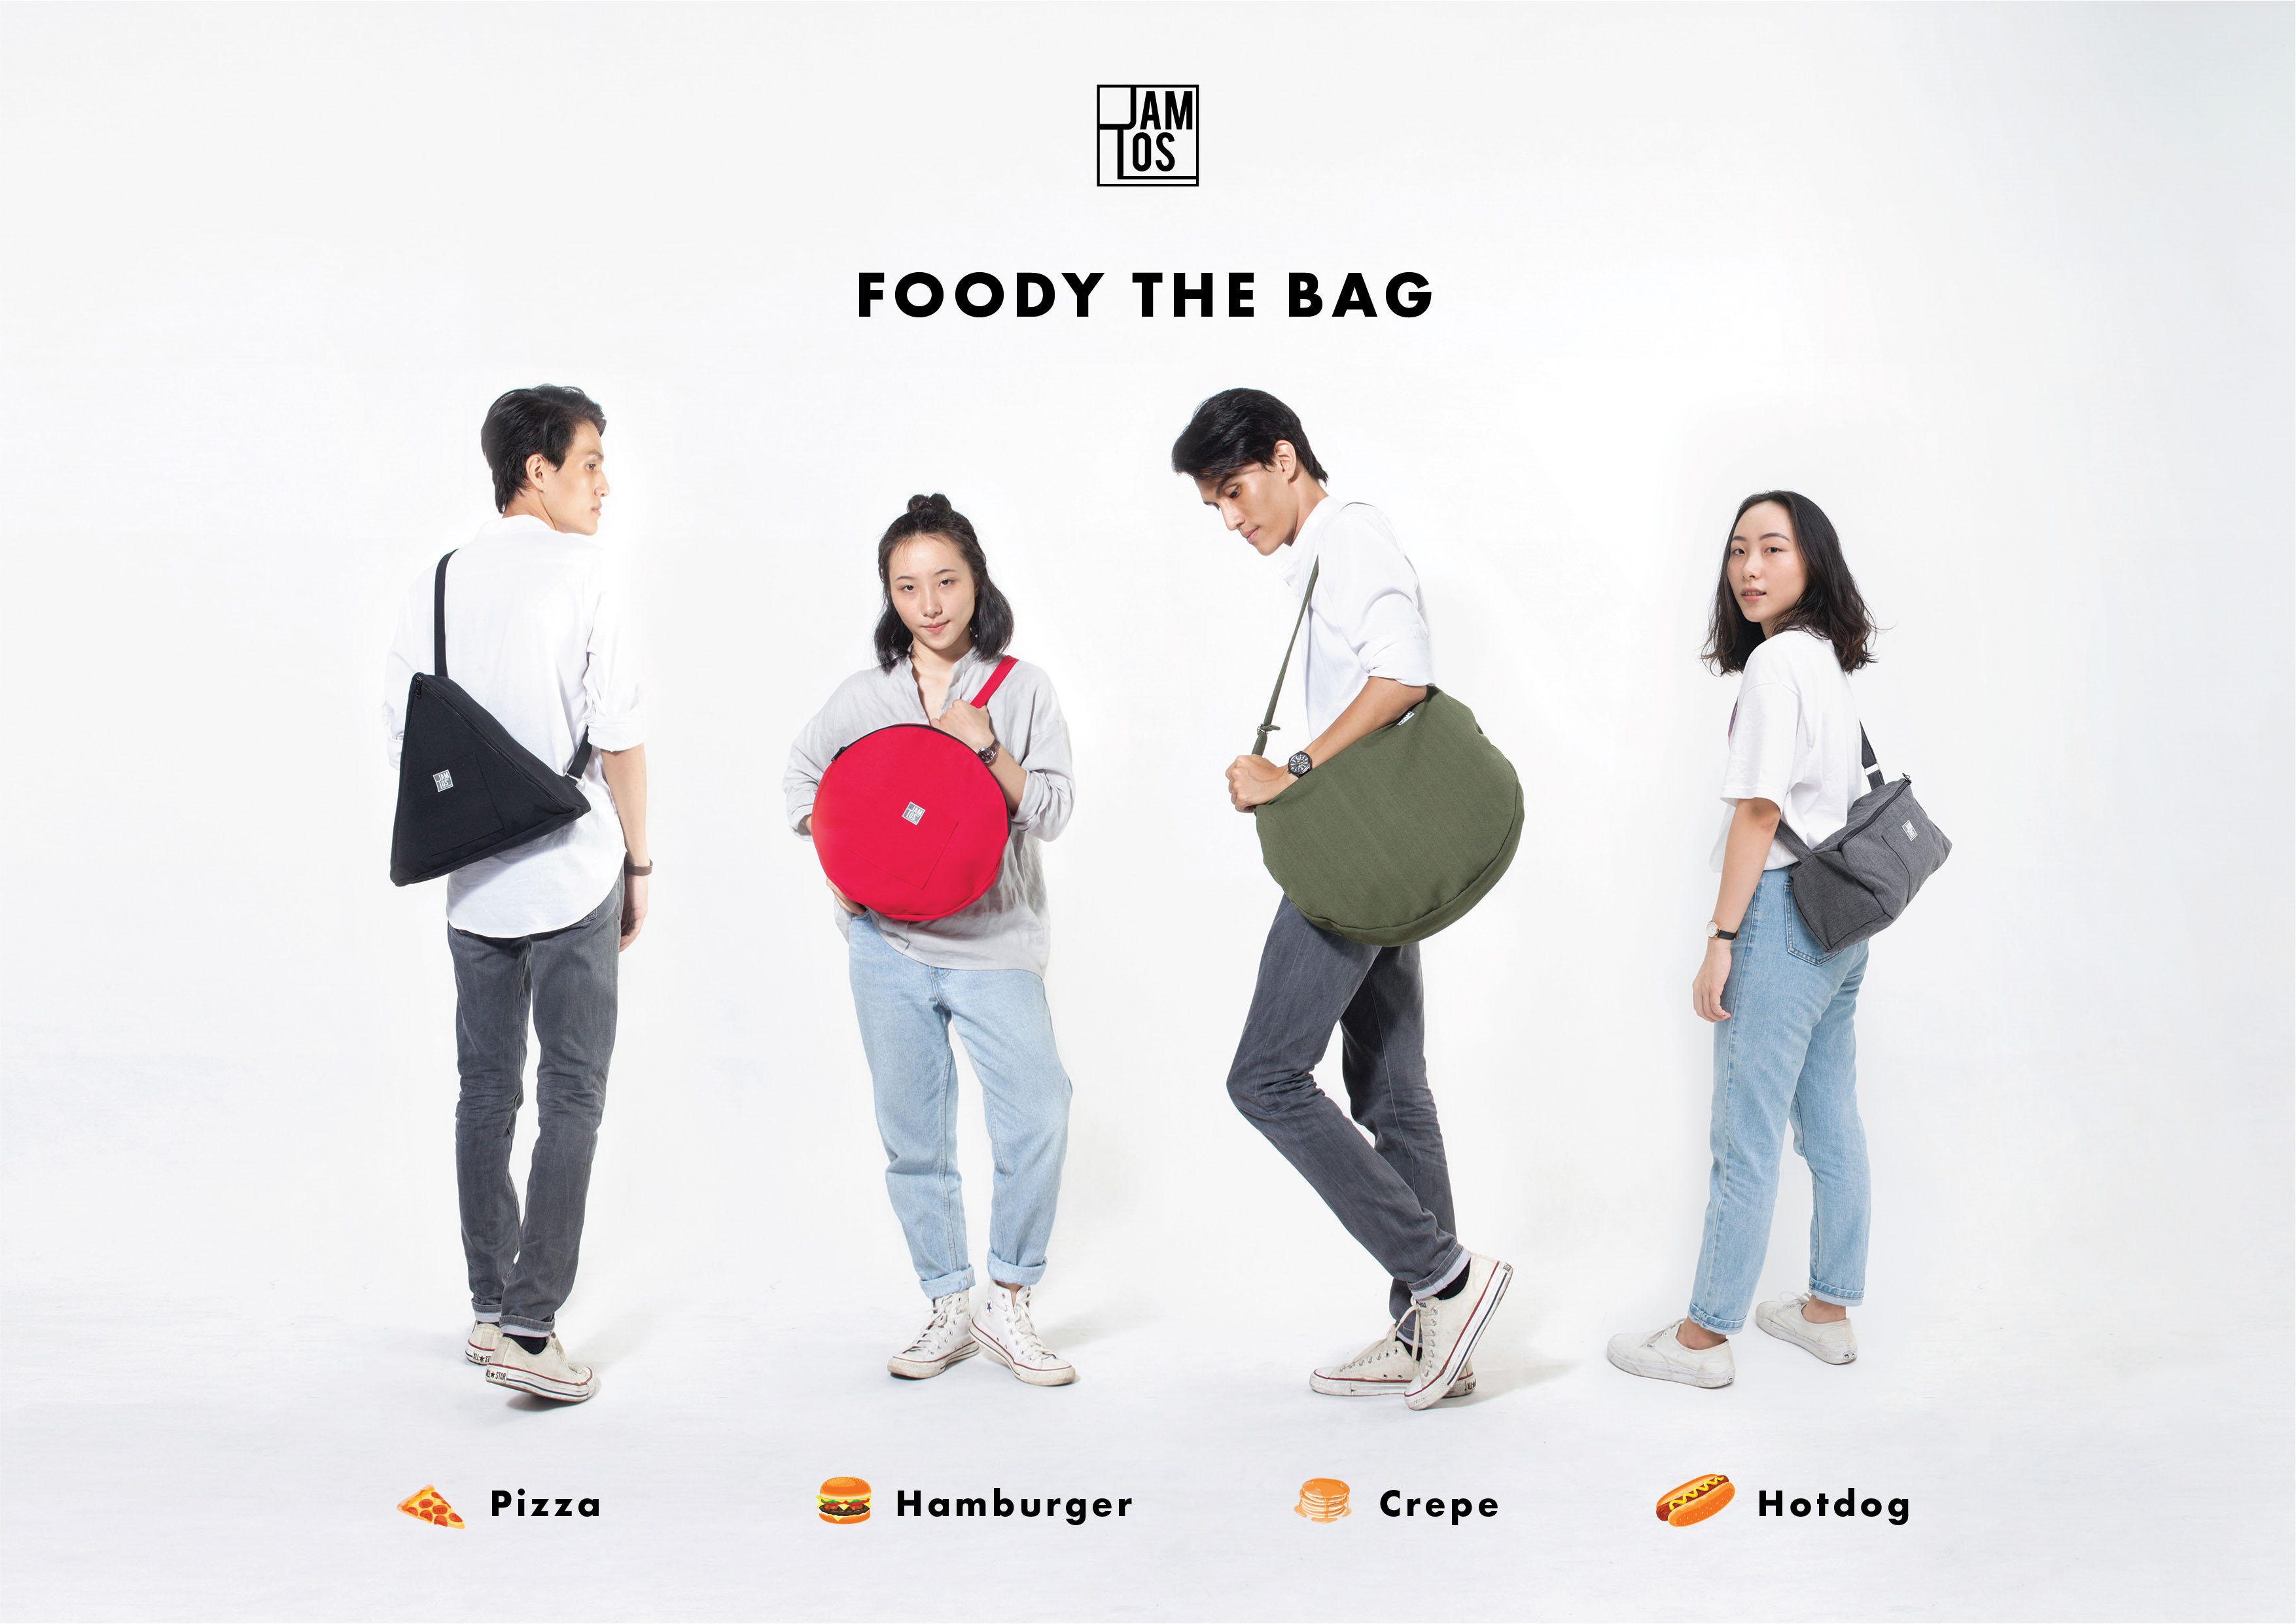 Bộ sưu tập FoodyTheBag của Jamlos với những chiếc túi lấy cảm hứng từ bánh hotdog, pizza, hamburger và bánh crepe, kể về tình yêu bánh ngọt và ẩm thực.